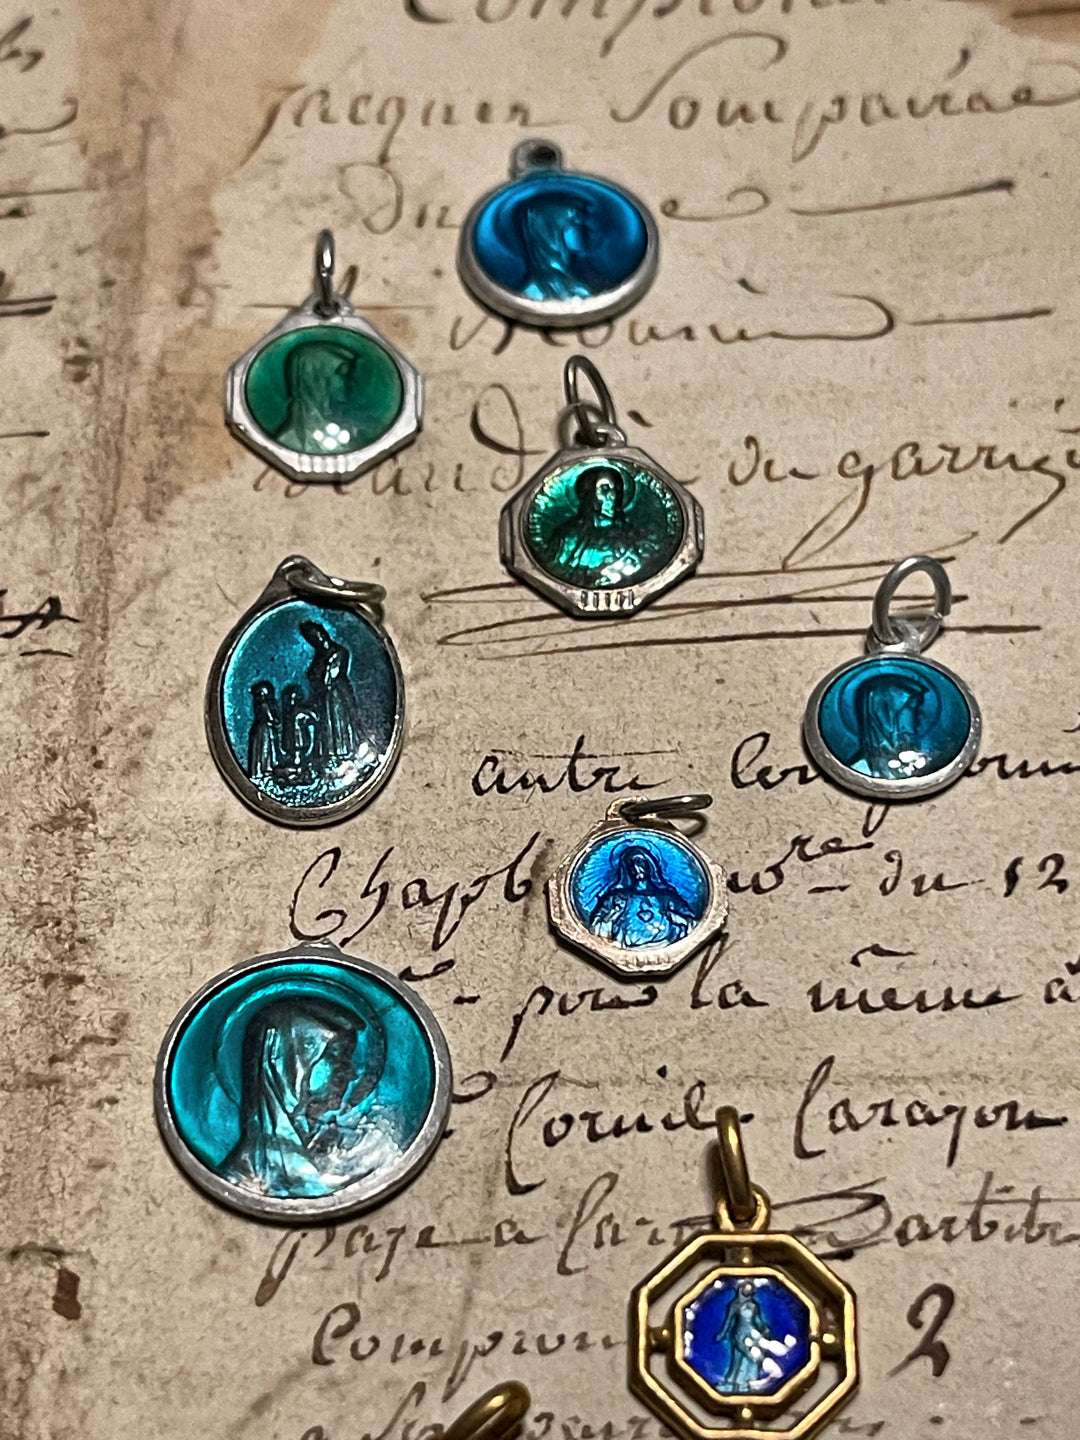 Original Vintage Blue Medals from France